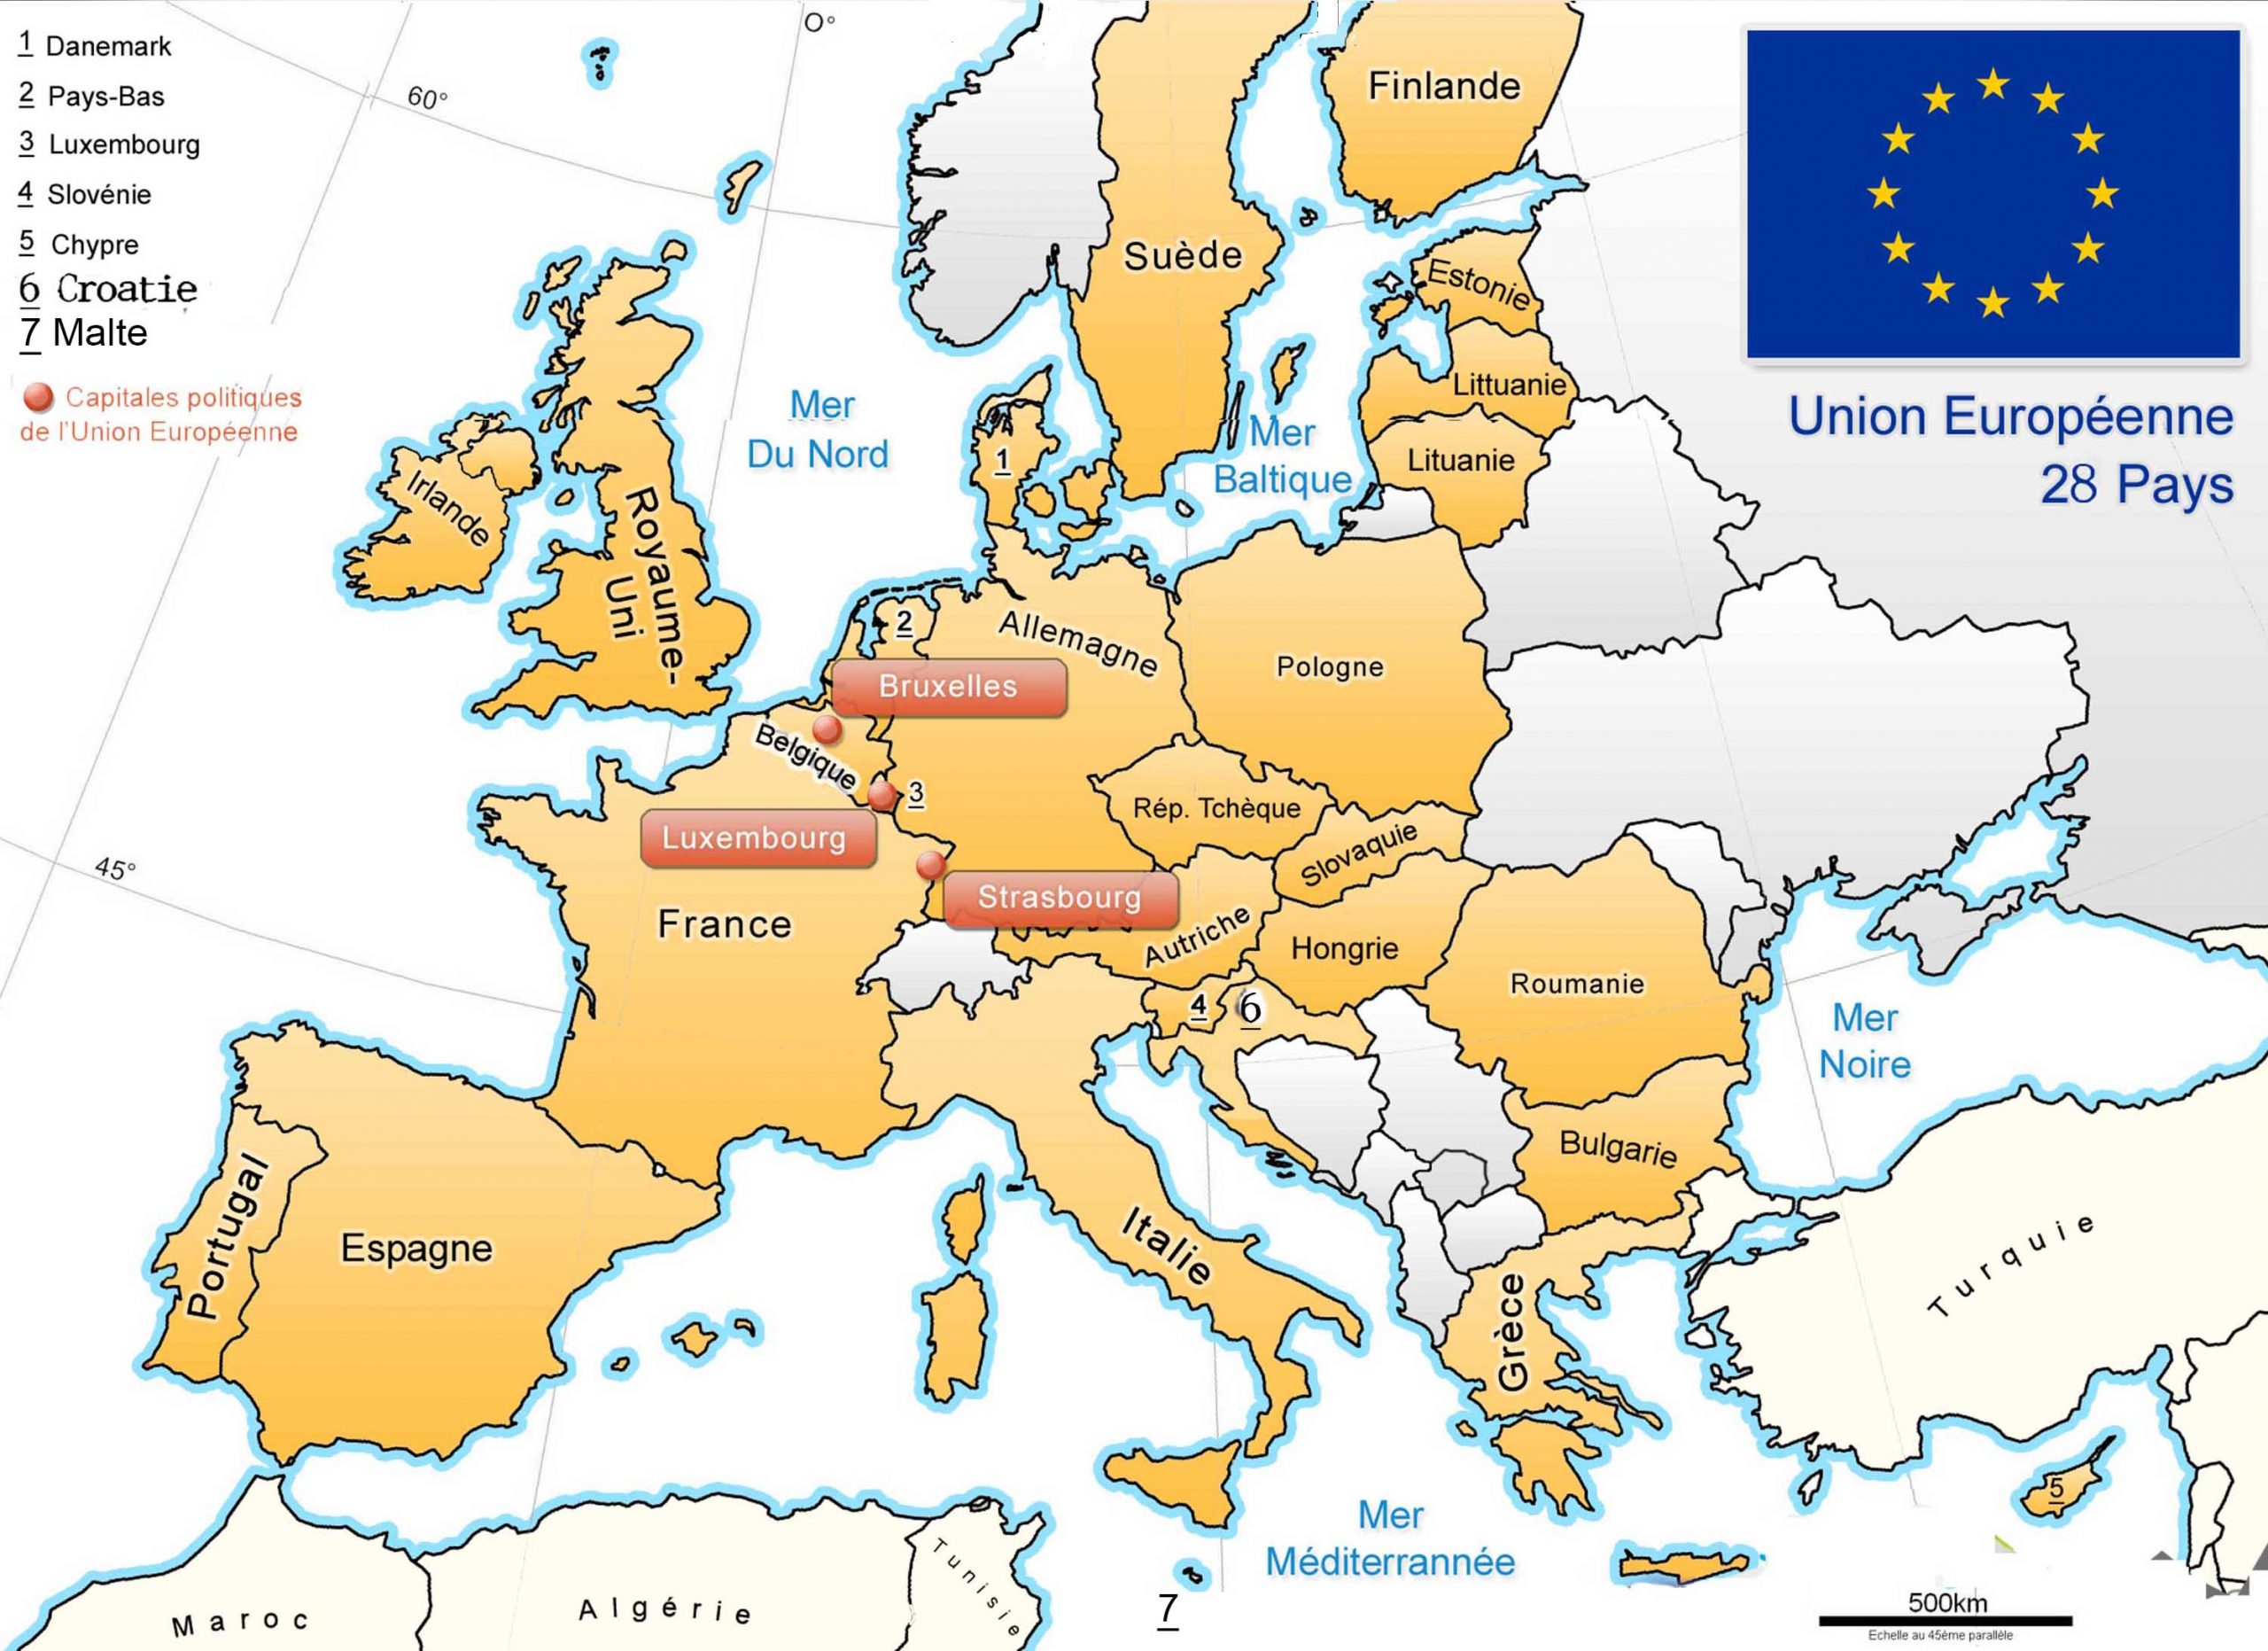 Apprendre À Placer Les Pays De L' Union Européenne - Le Blog intérieur Capitale Union Européenne